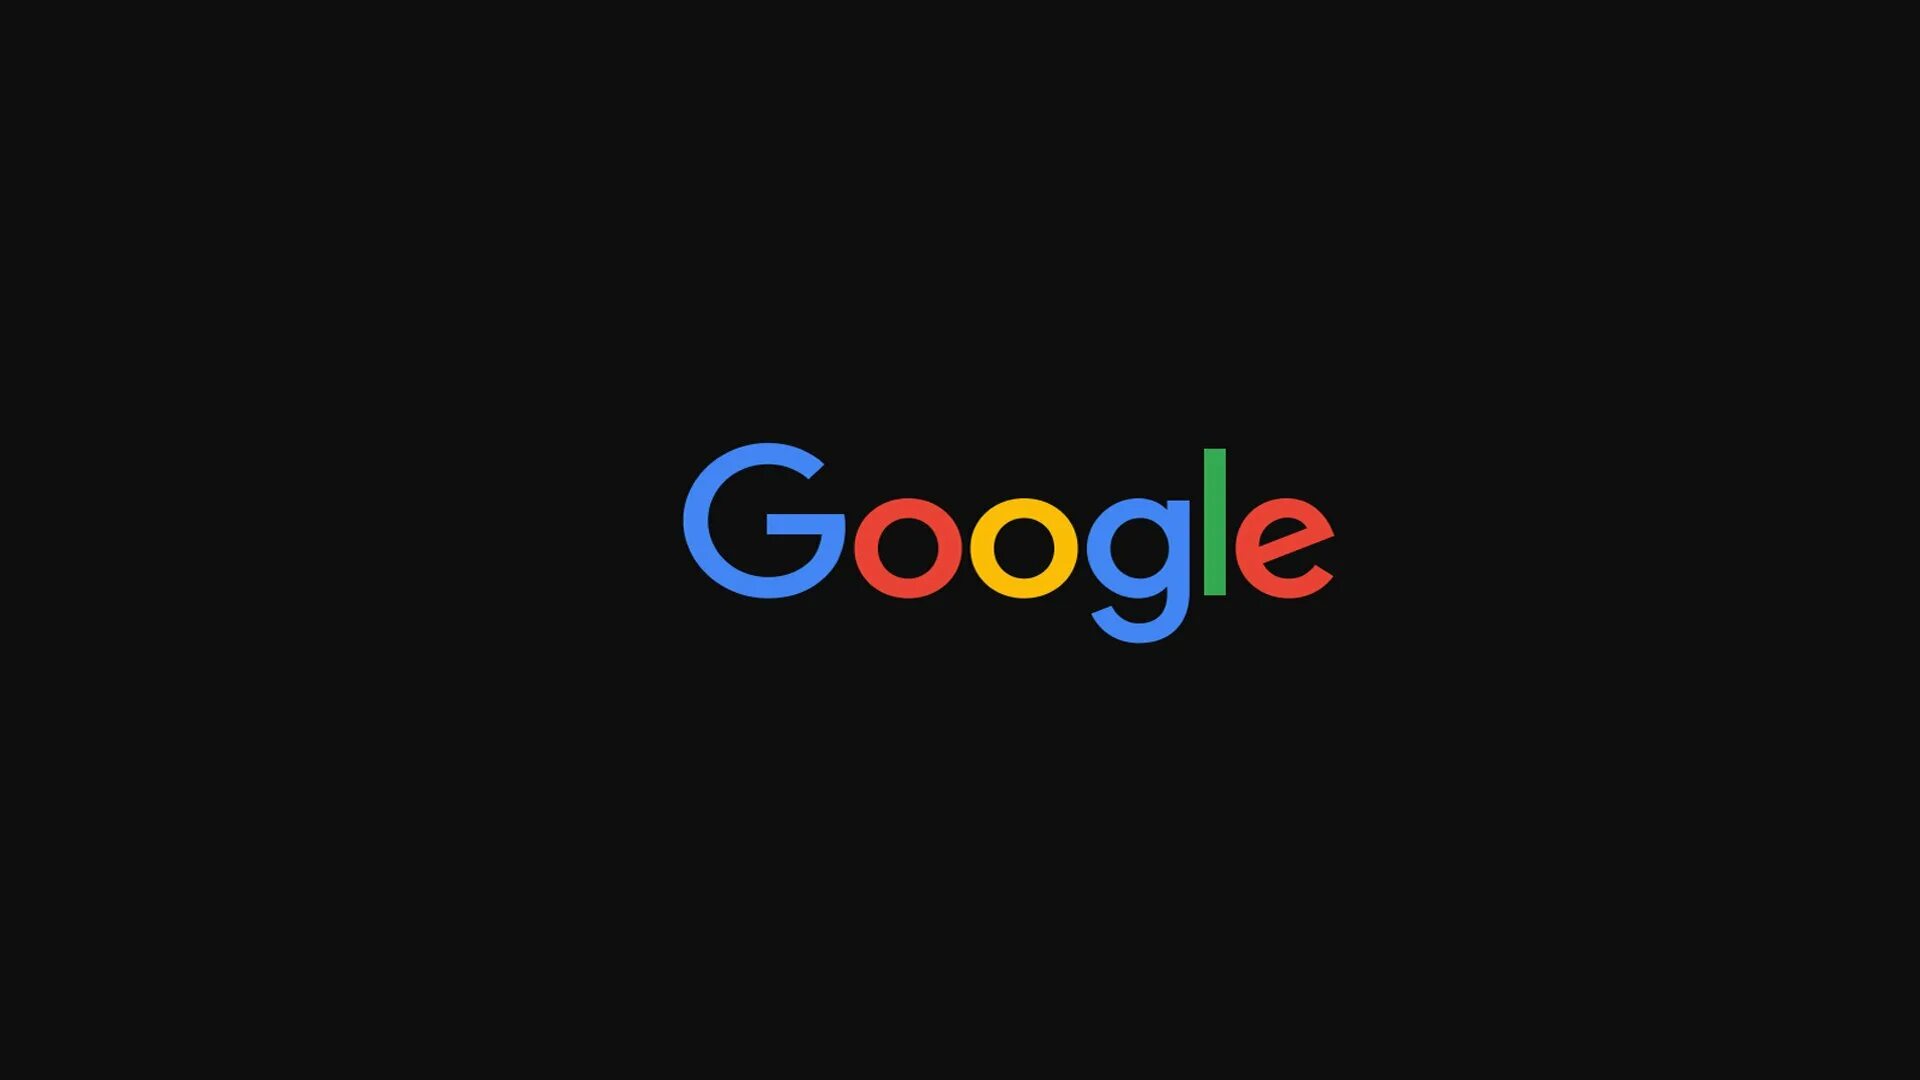 Channel google. Гугл. Гугл лого. Логотип гугл на черном фоне. Обои Google.